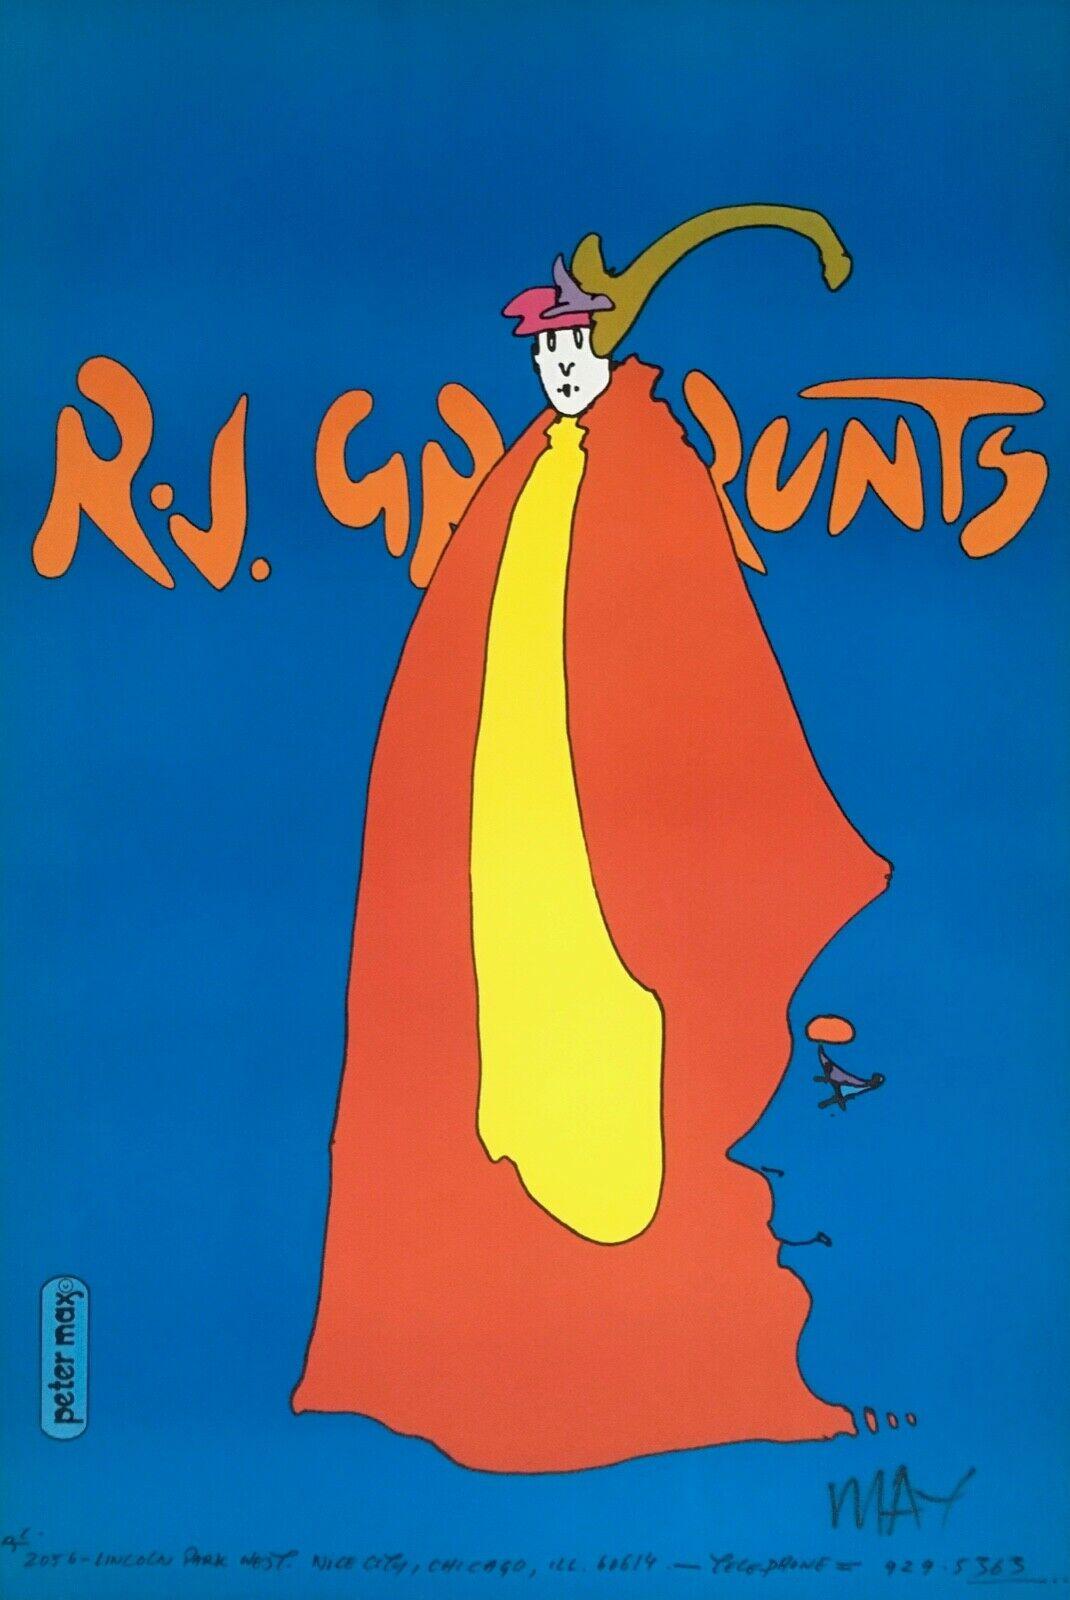 Peter Max Landscape Print - R.J. Grunts, Prince of Blue, Signed Original 1969 Vintage Litho Psychedelic 